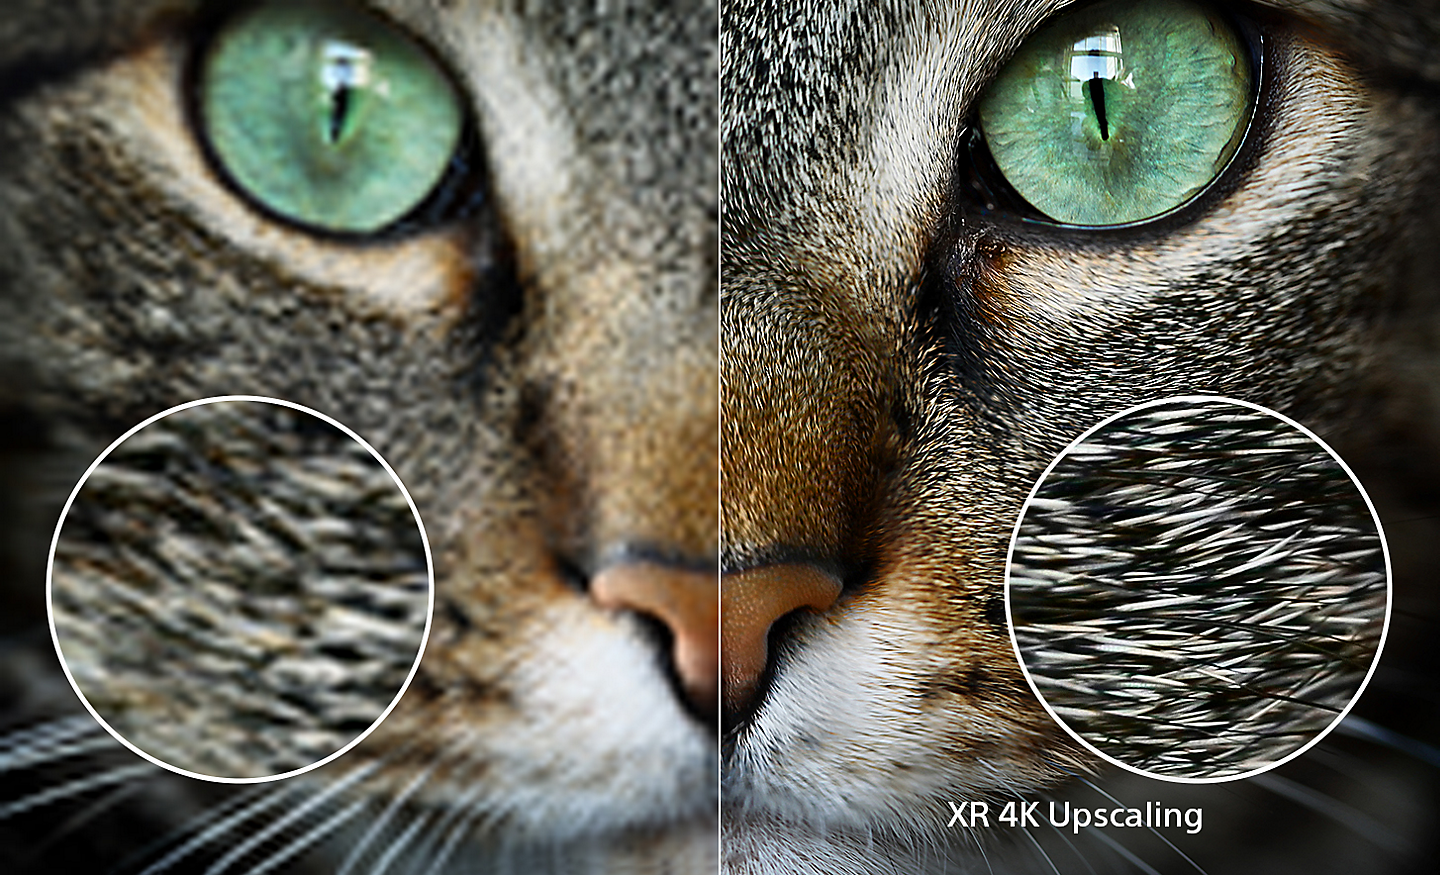 Màn hình chia đôi thể hiện đầu một chú mèo, với phần bên phải cho thấy chi tiết rõ nét hơn nhờ công nghệ XR 4K Upscaling